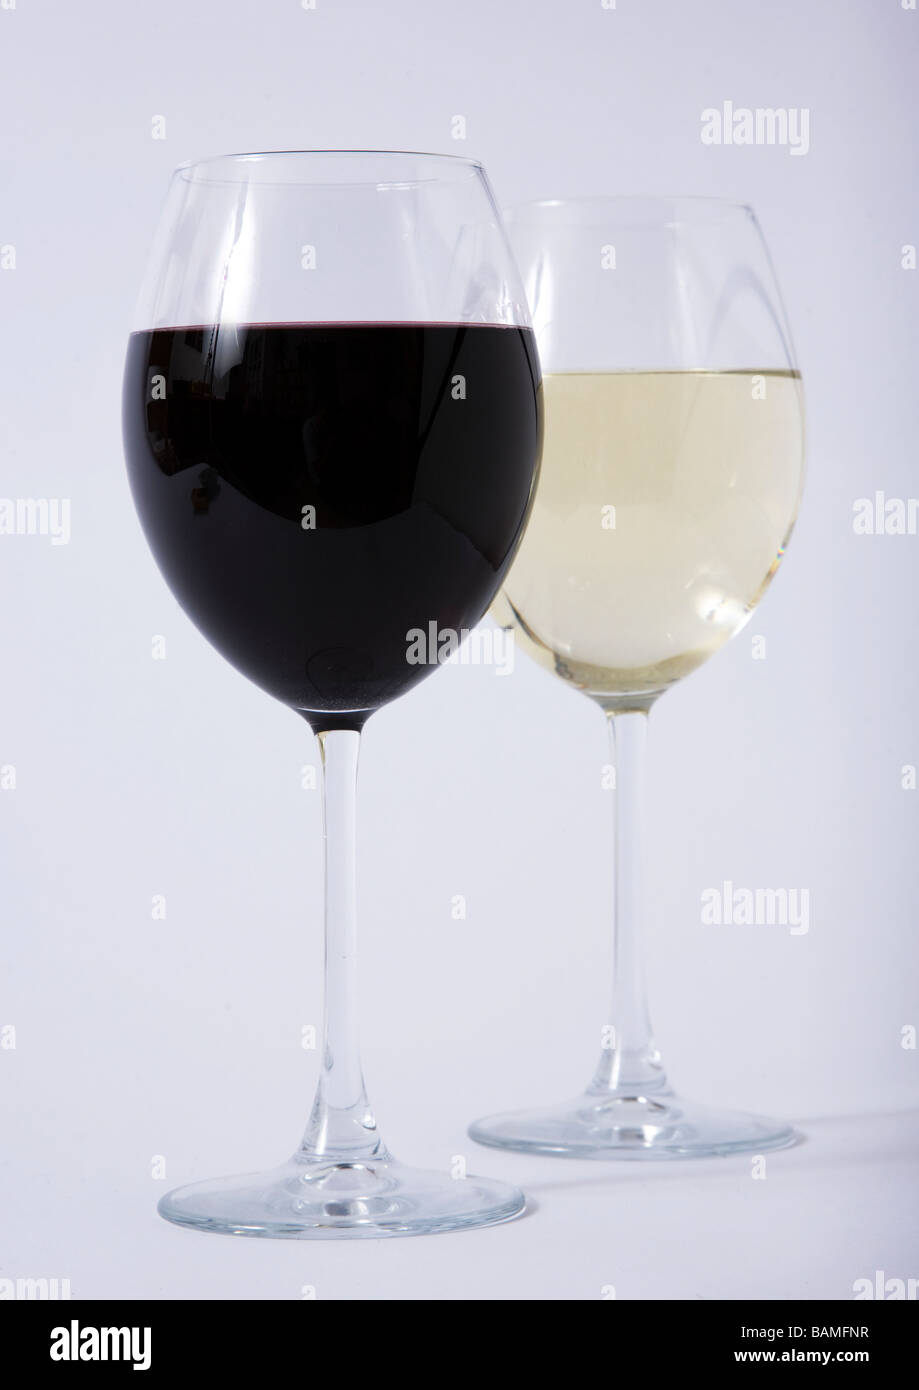 Vaso de vino blanco rojo Foto de stock